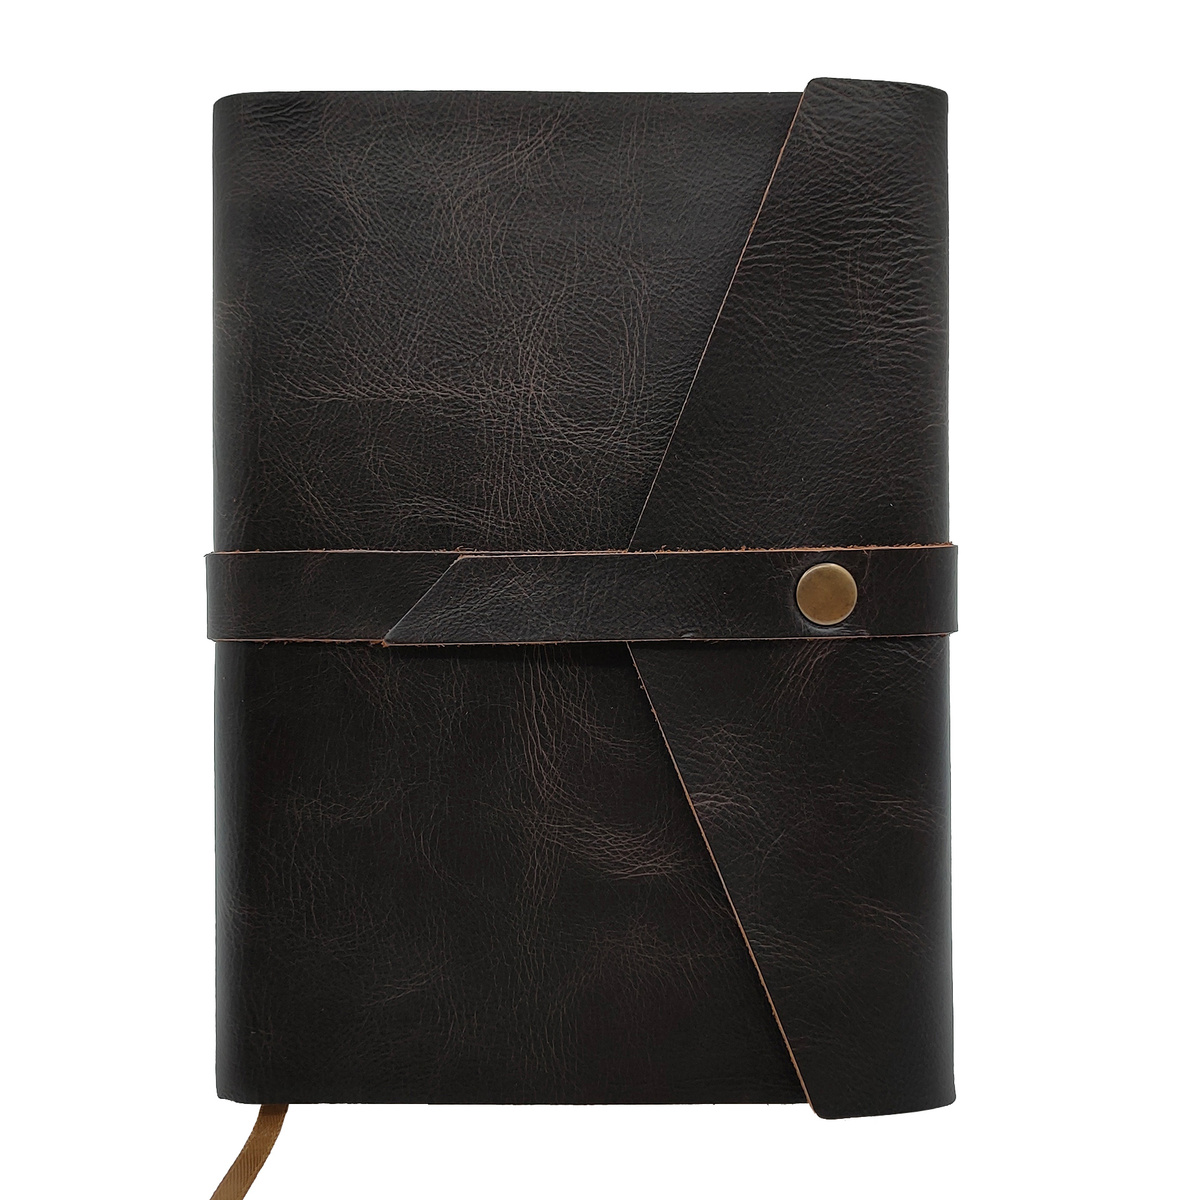 Кожаный ежедневник Shiva Leather с отделкой Pull-Up, с застежкой на кнопку и декоративной горизонтальной полоской